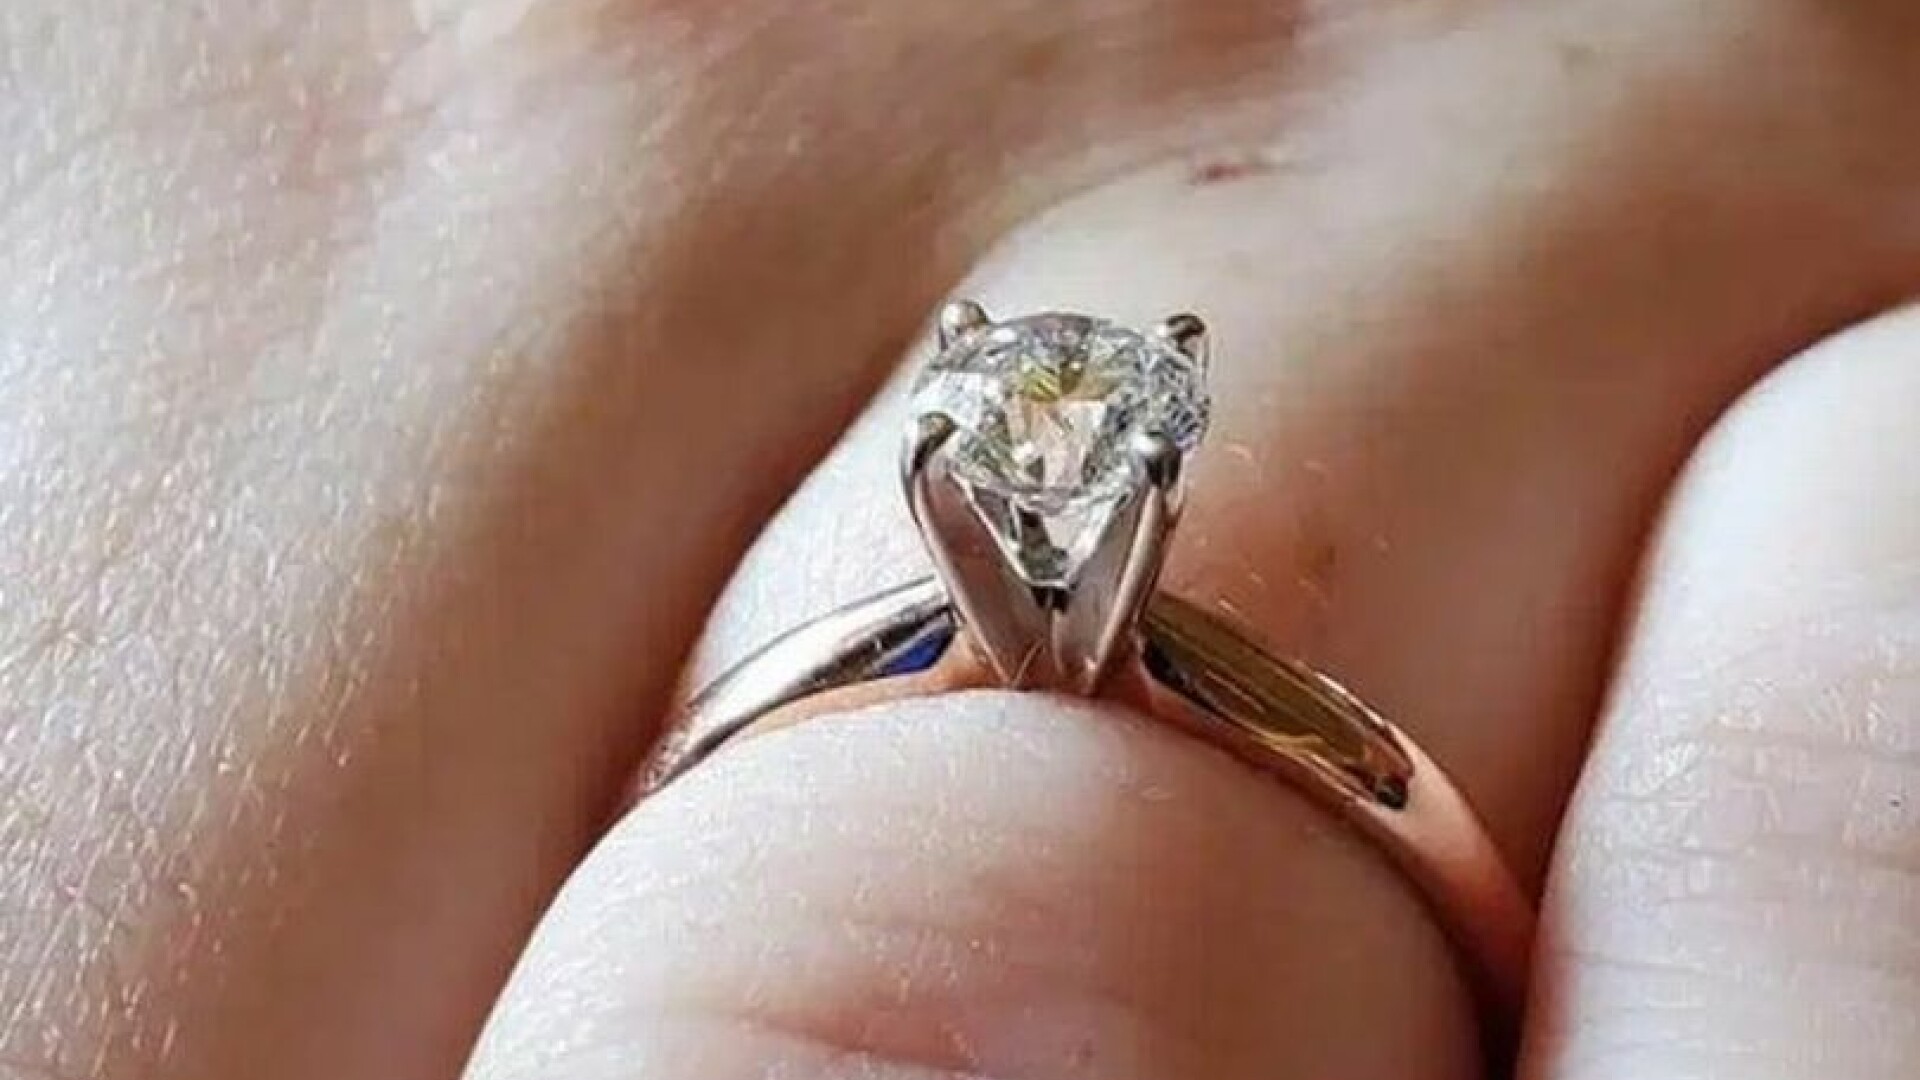 A vrut să se laude cu inelul de logodnă pe Facebook, dar în poză a apărut ceva neobișnuit